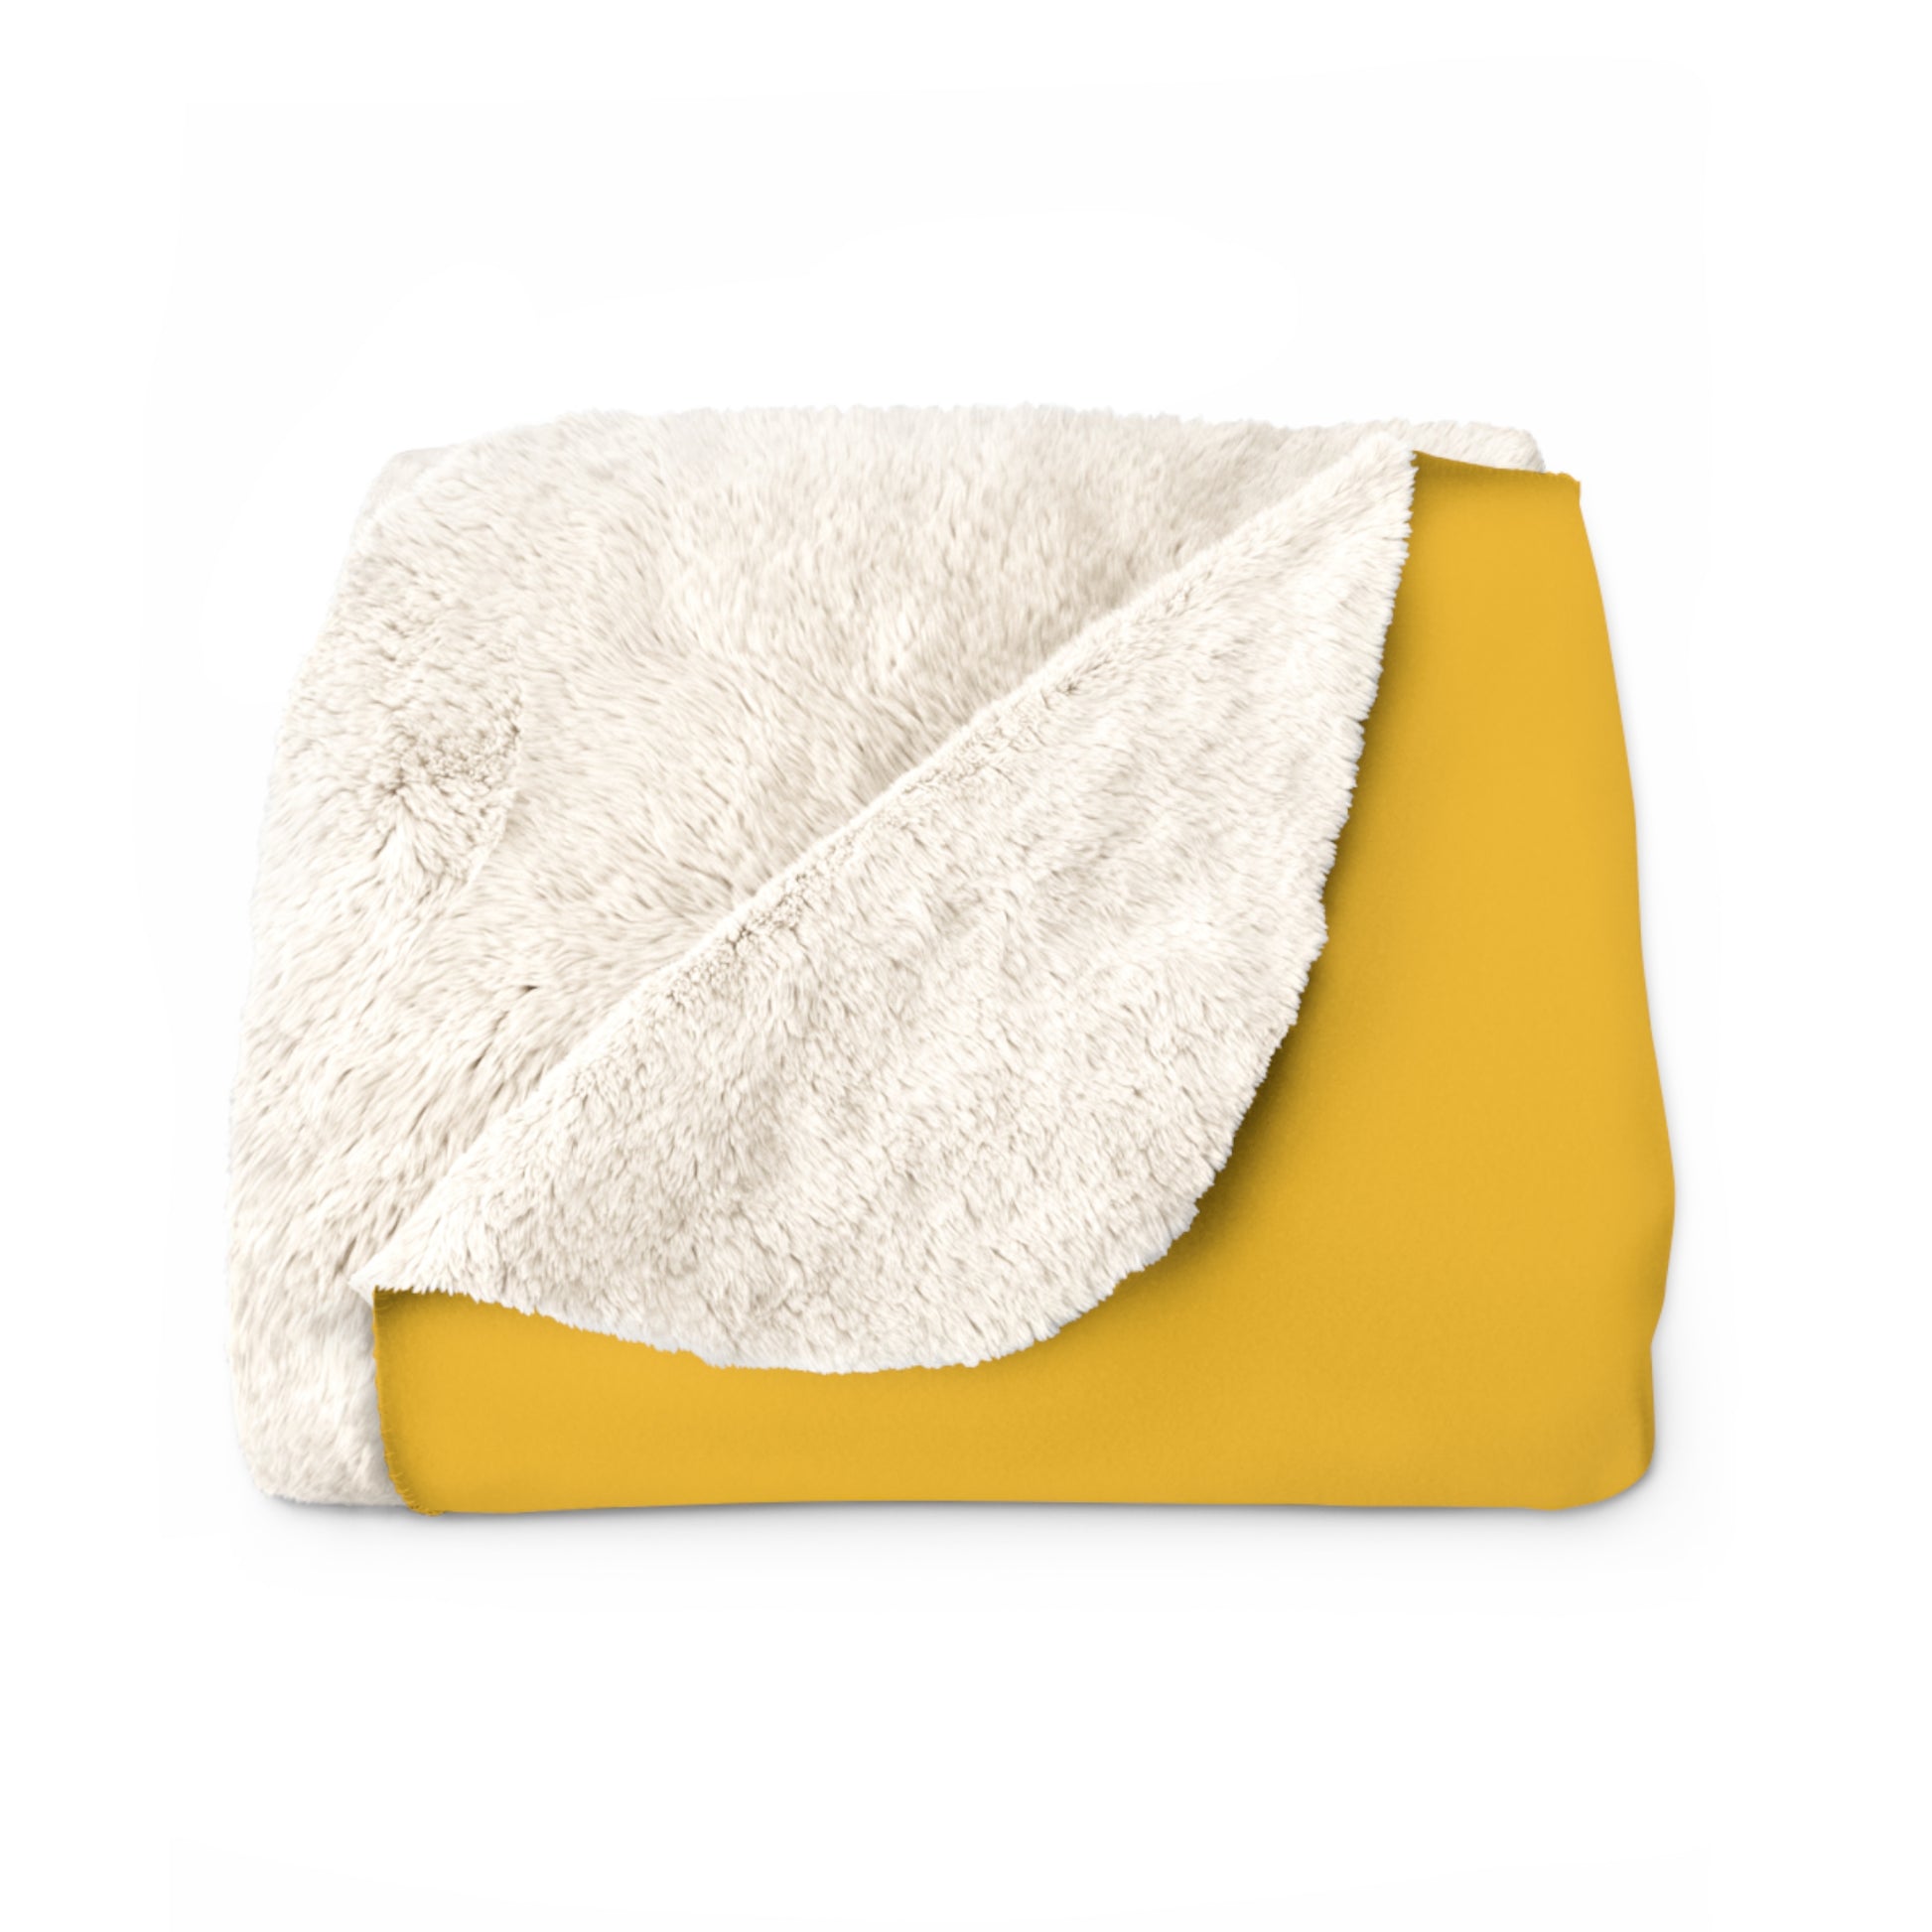 Gelbe Schmetterlings-Sofa-Kuscheldecke, 127 x 152,4 cm. Kleine Fleecedecke für Couch, weiche und warme Decke, flauschig als Sofadecke